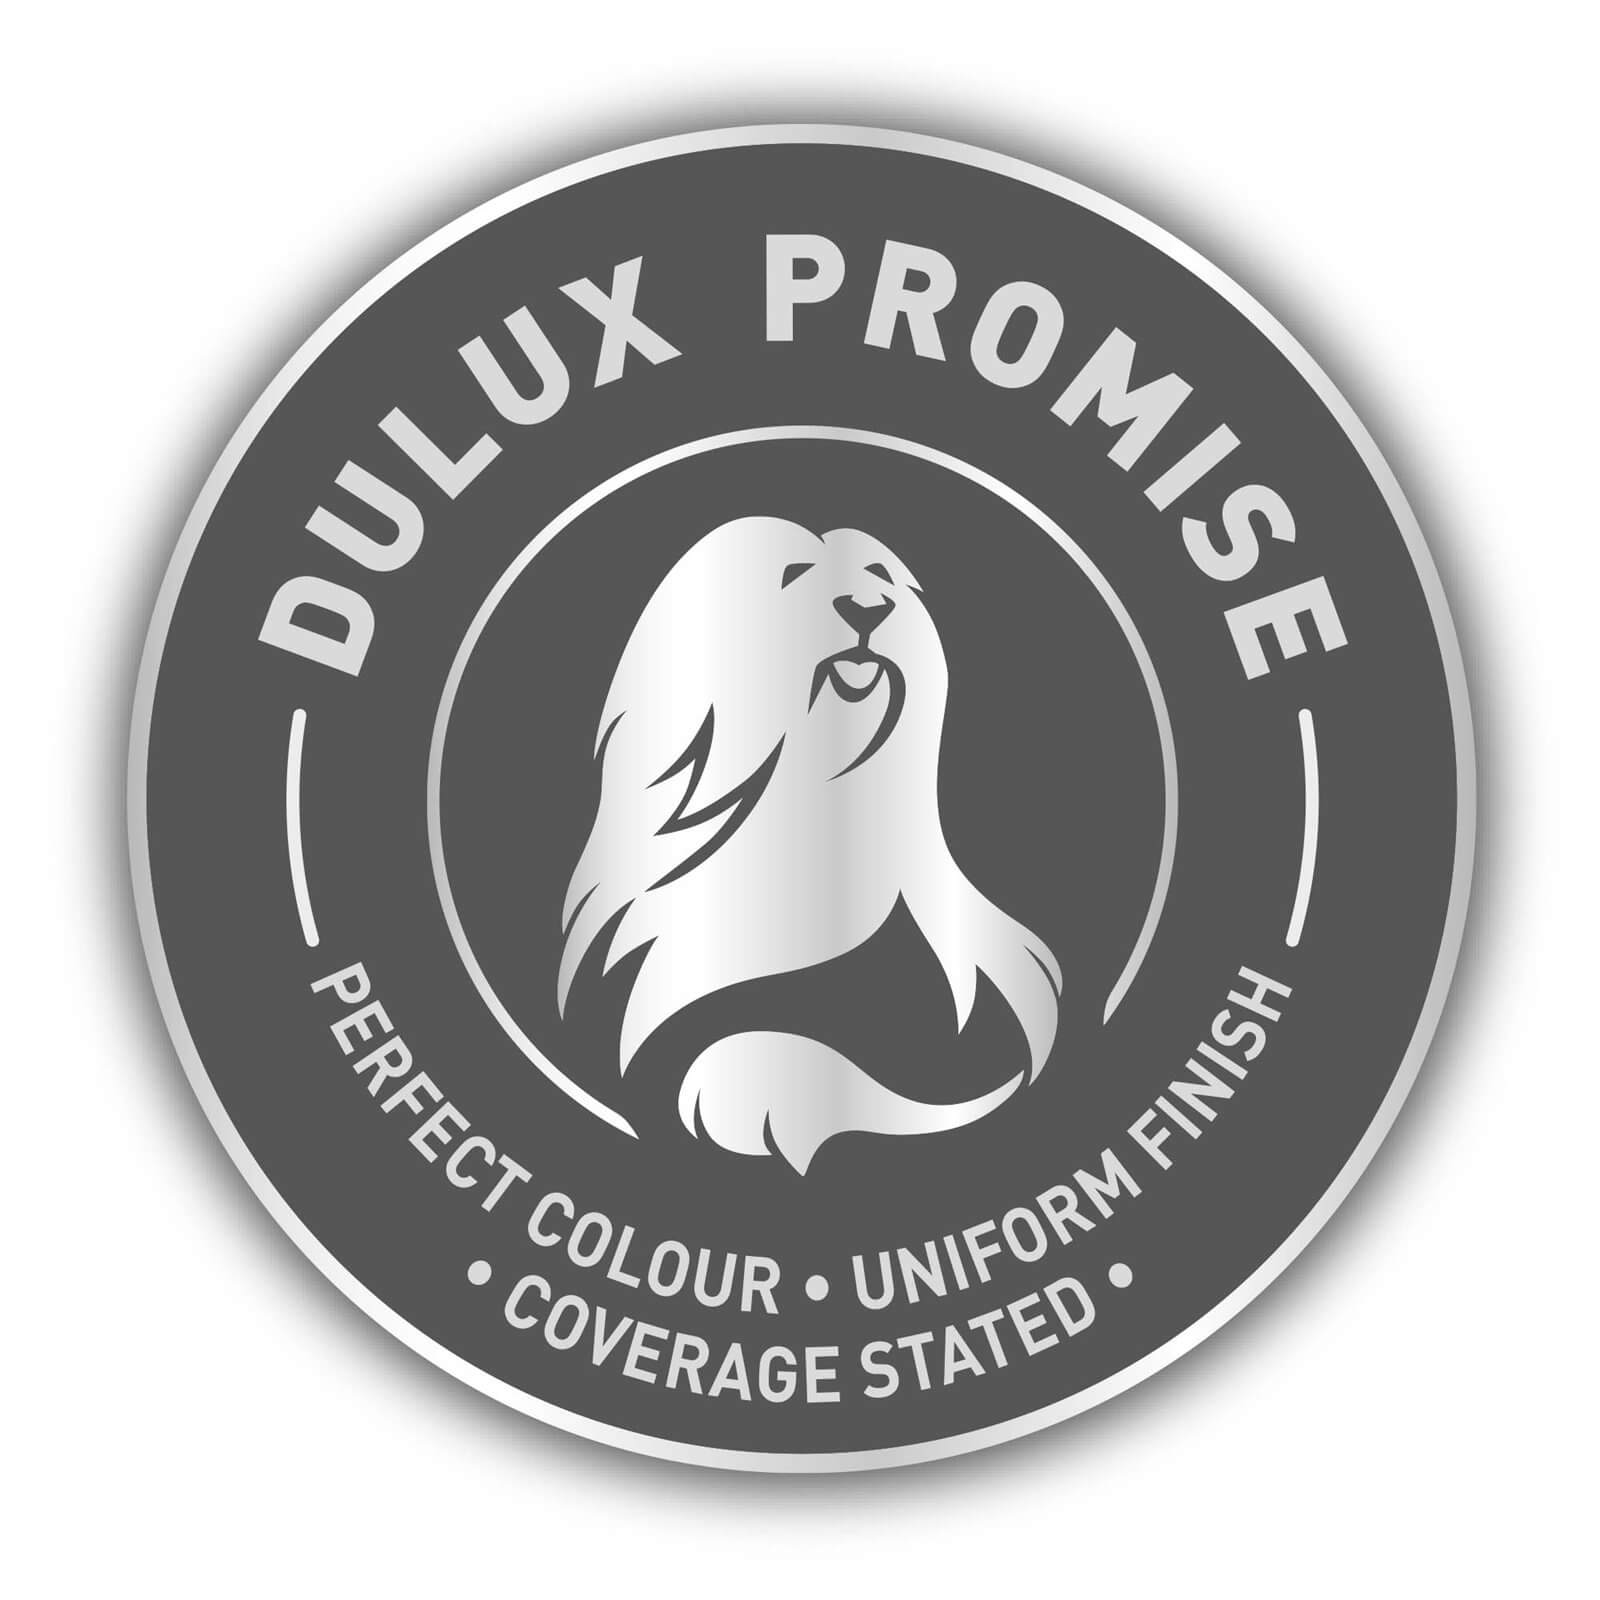 Dulux Feature Wall Raspberry Diva - Matt Emulsion Paint - 1.25L